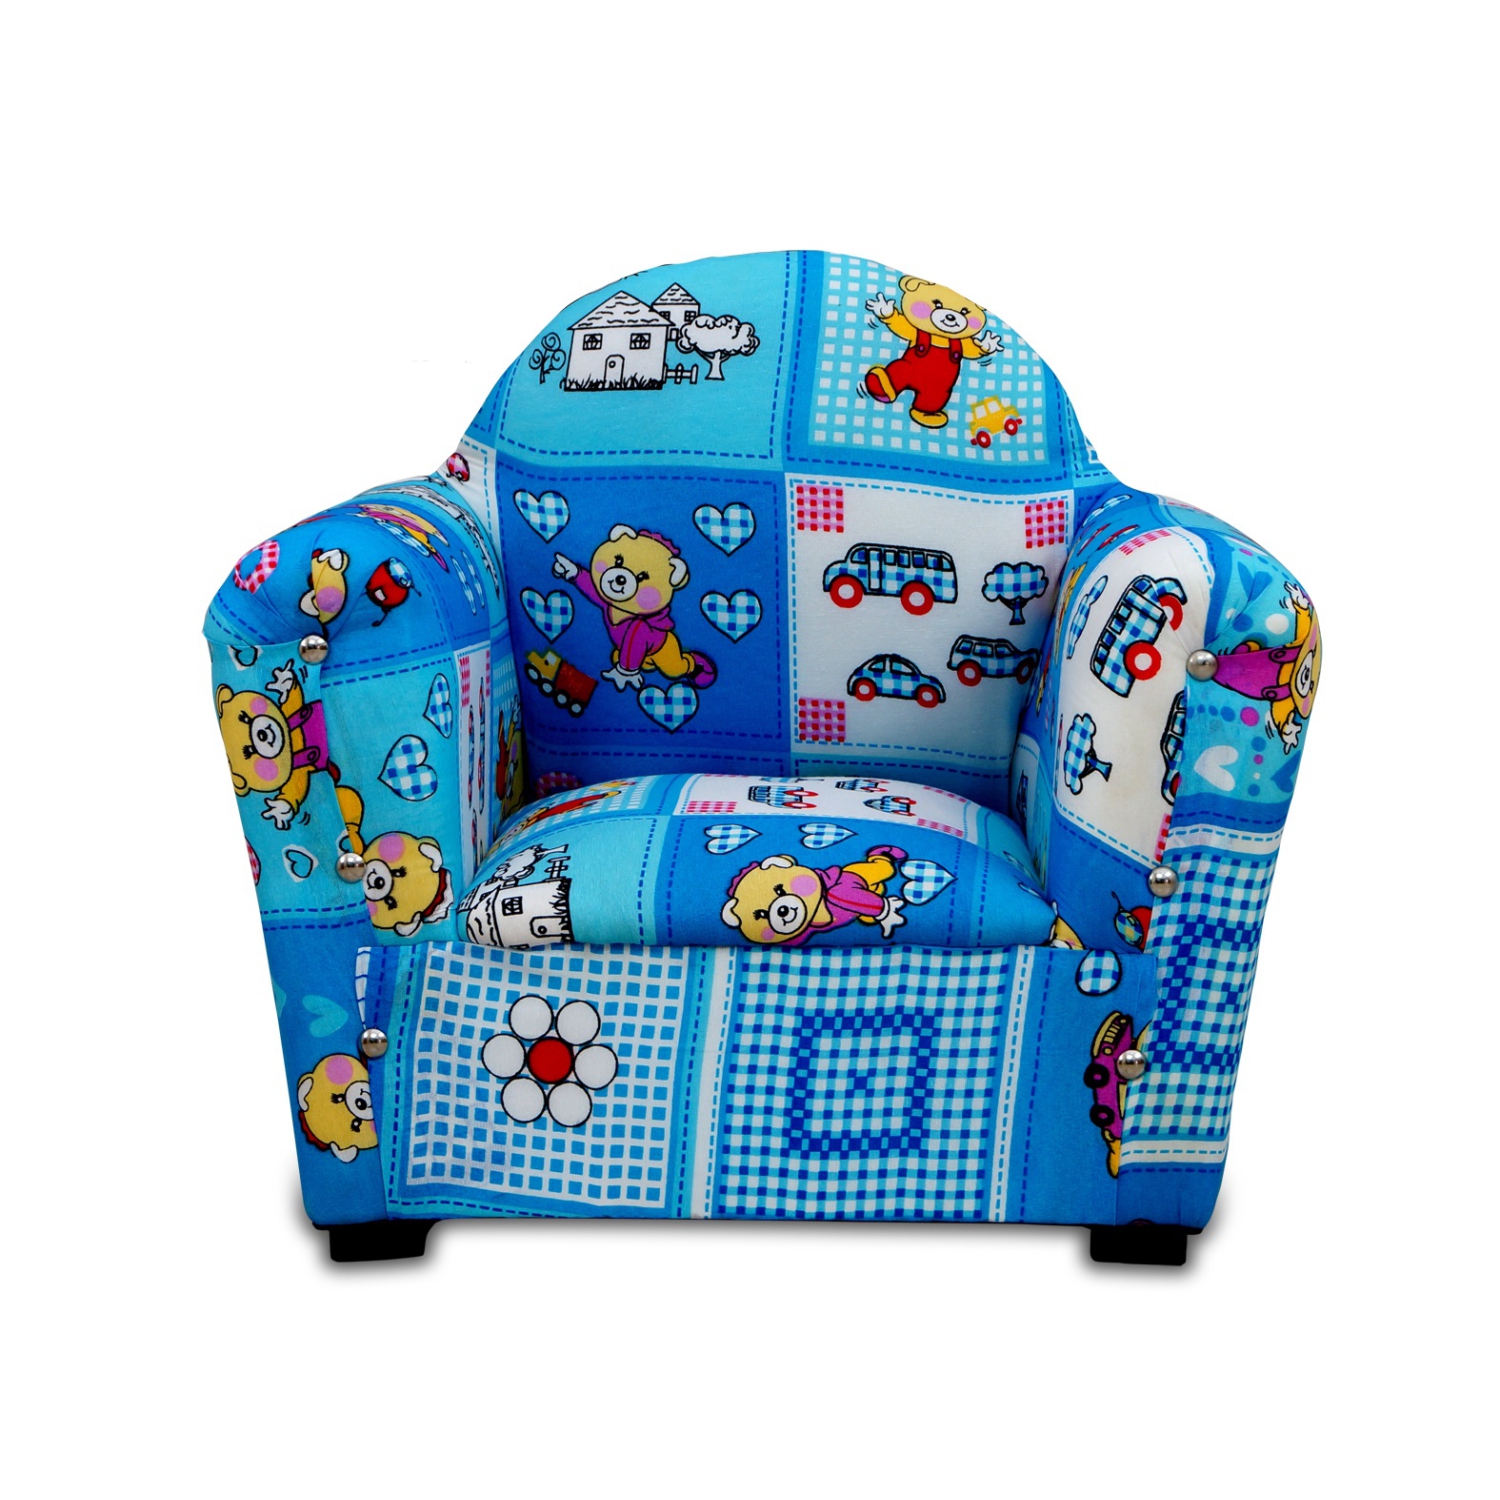 Çocuk odalarında bebek koltuk modelleriyle gelen rahatlık Melek